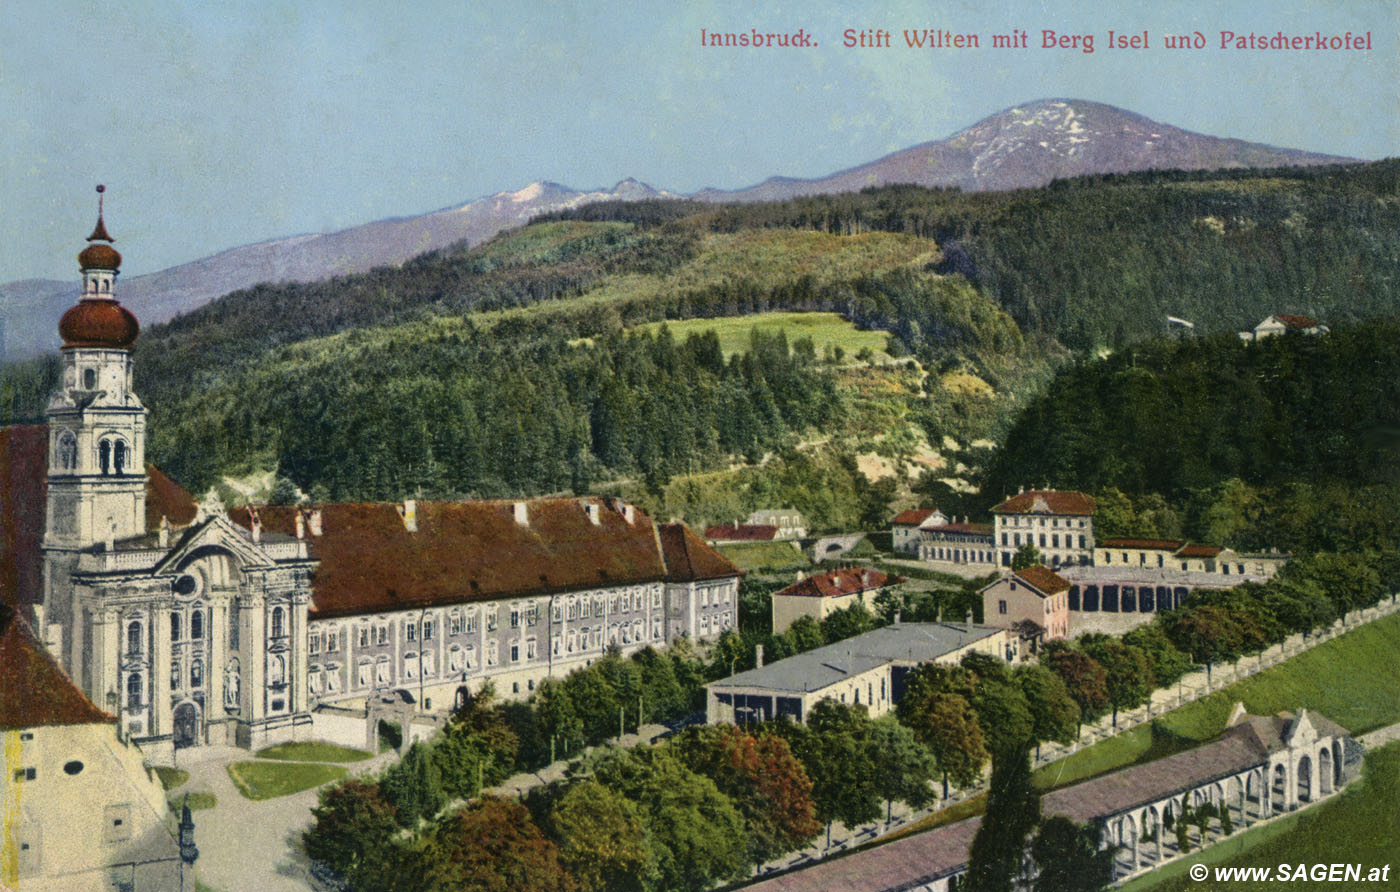 Innsbruck. Stift Wilten mit Berg Isel und Patscherkofel